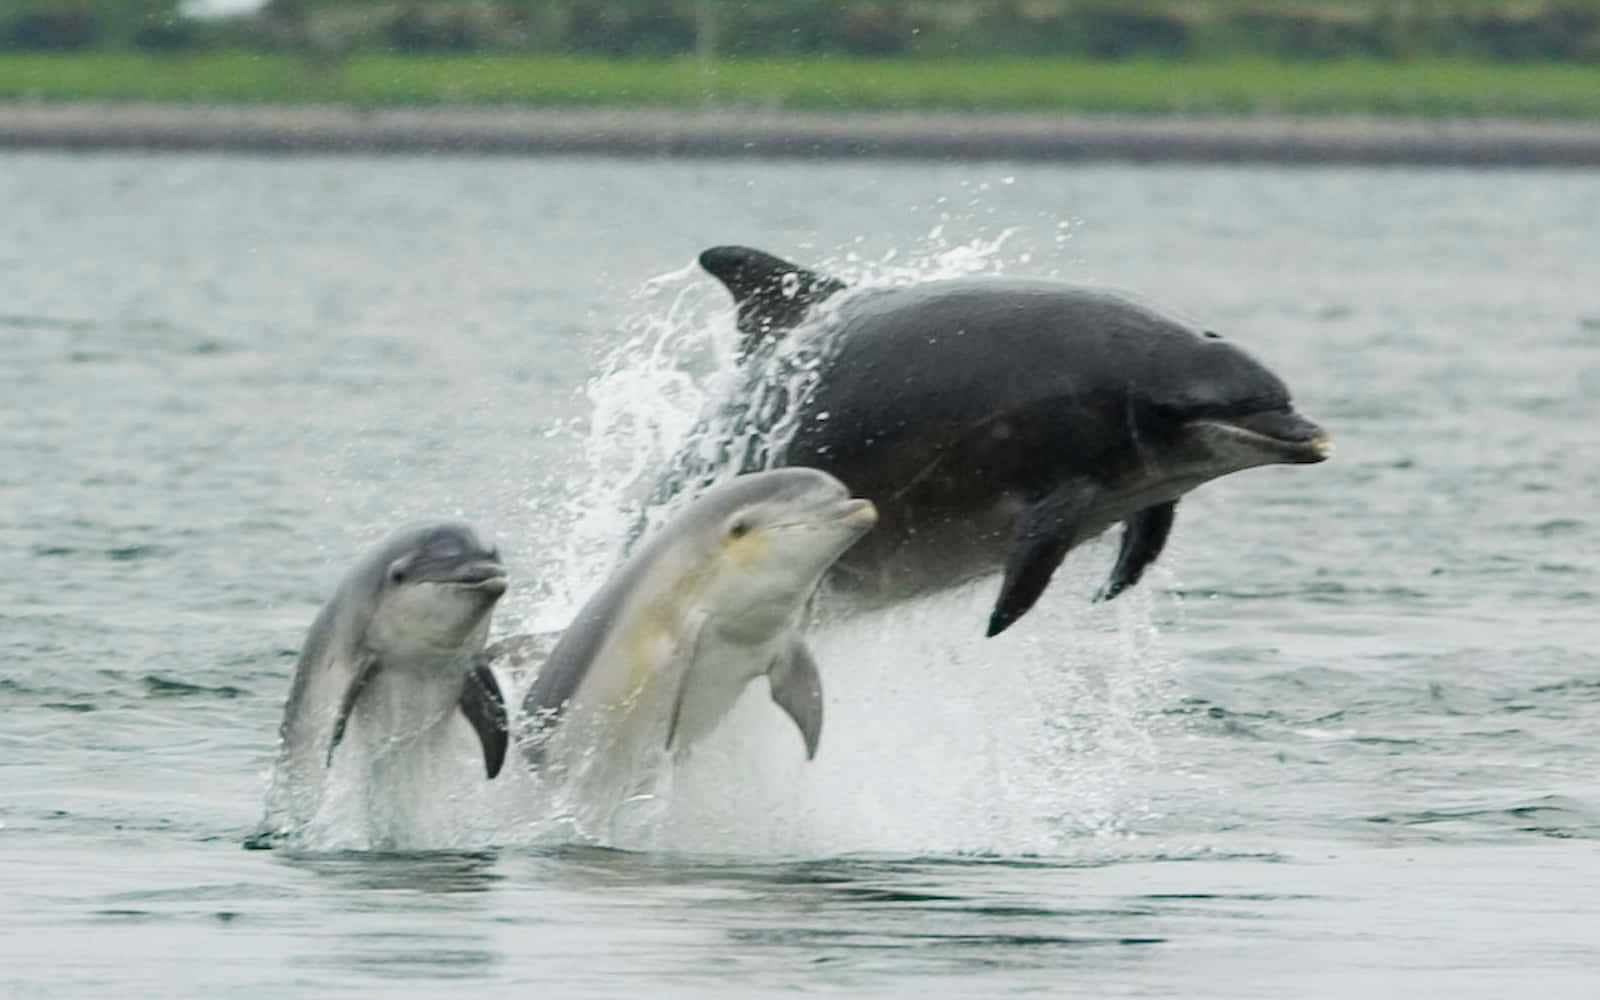 Unamanada De Delfines En Las Soleadas Aguas Azules.